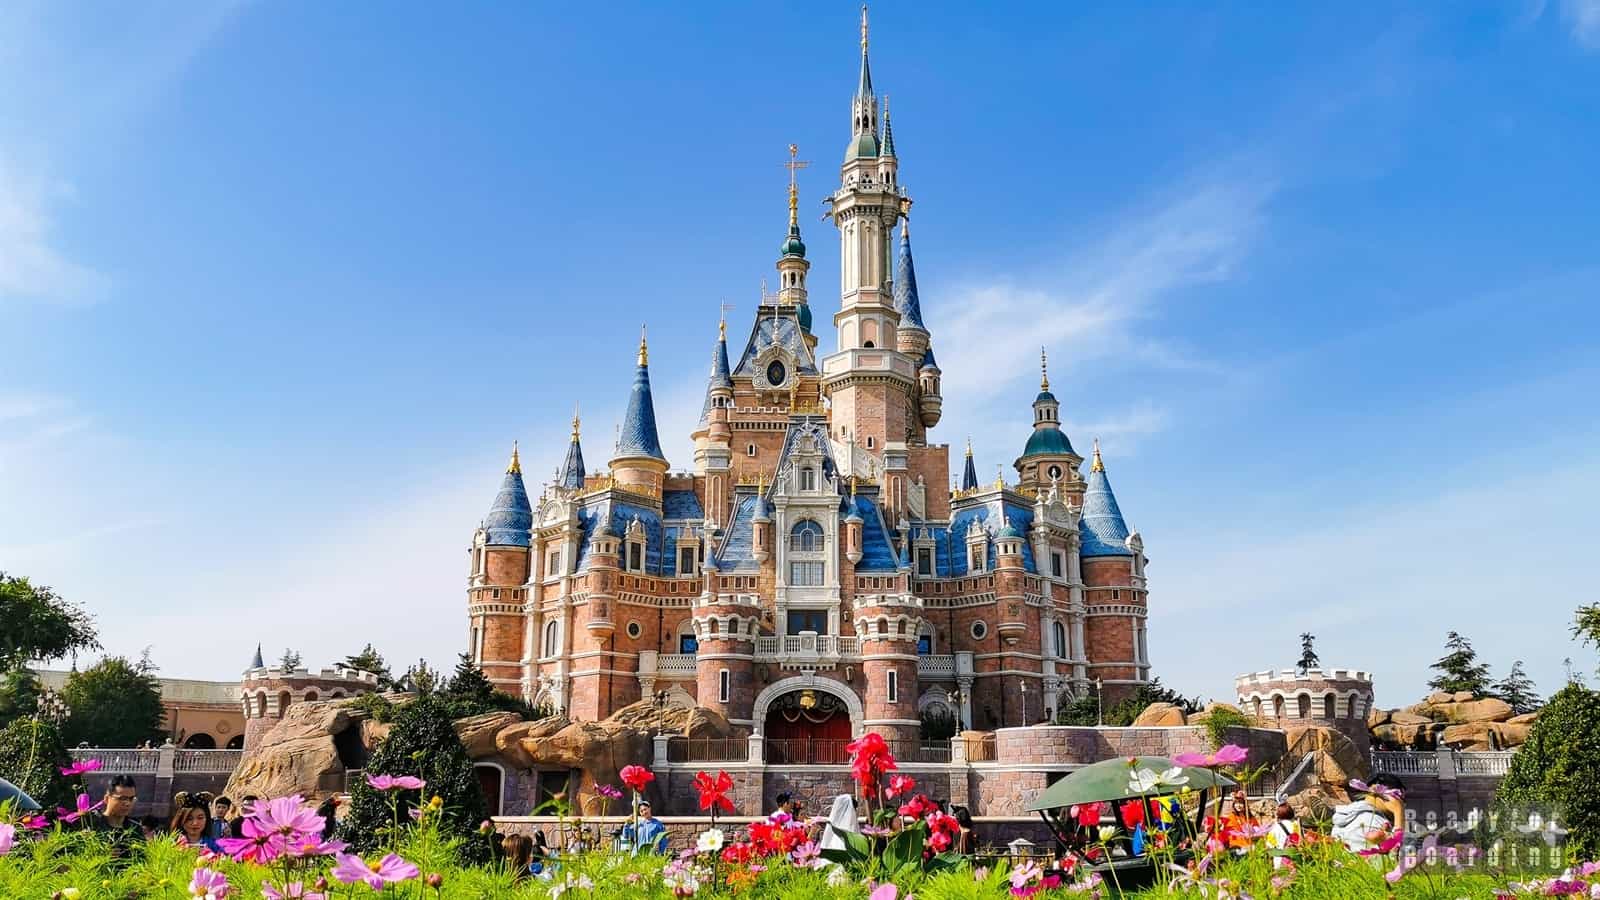 Shanghai Disneyland Park (Shanghai Disney Resort), China